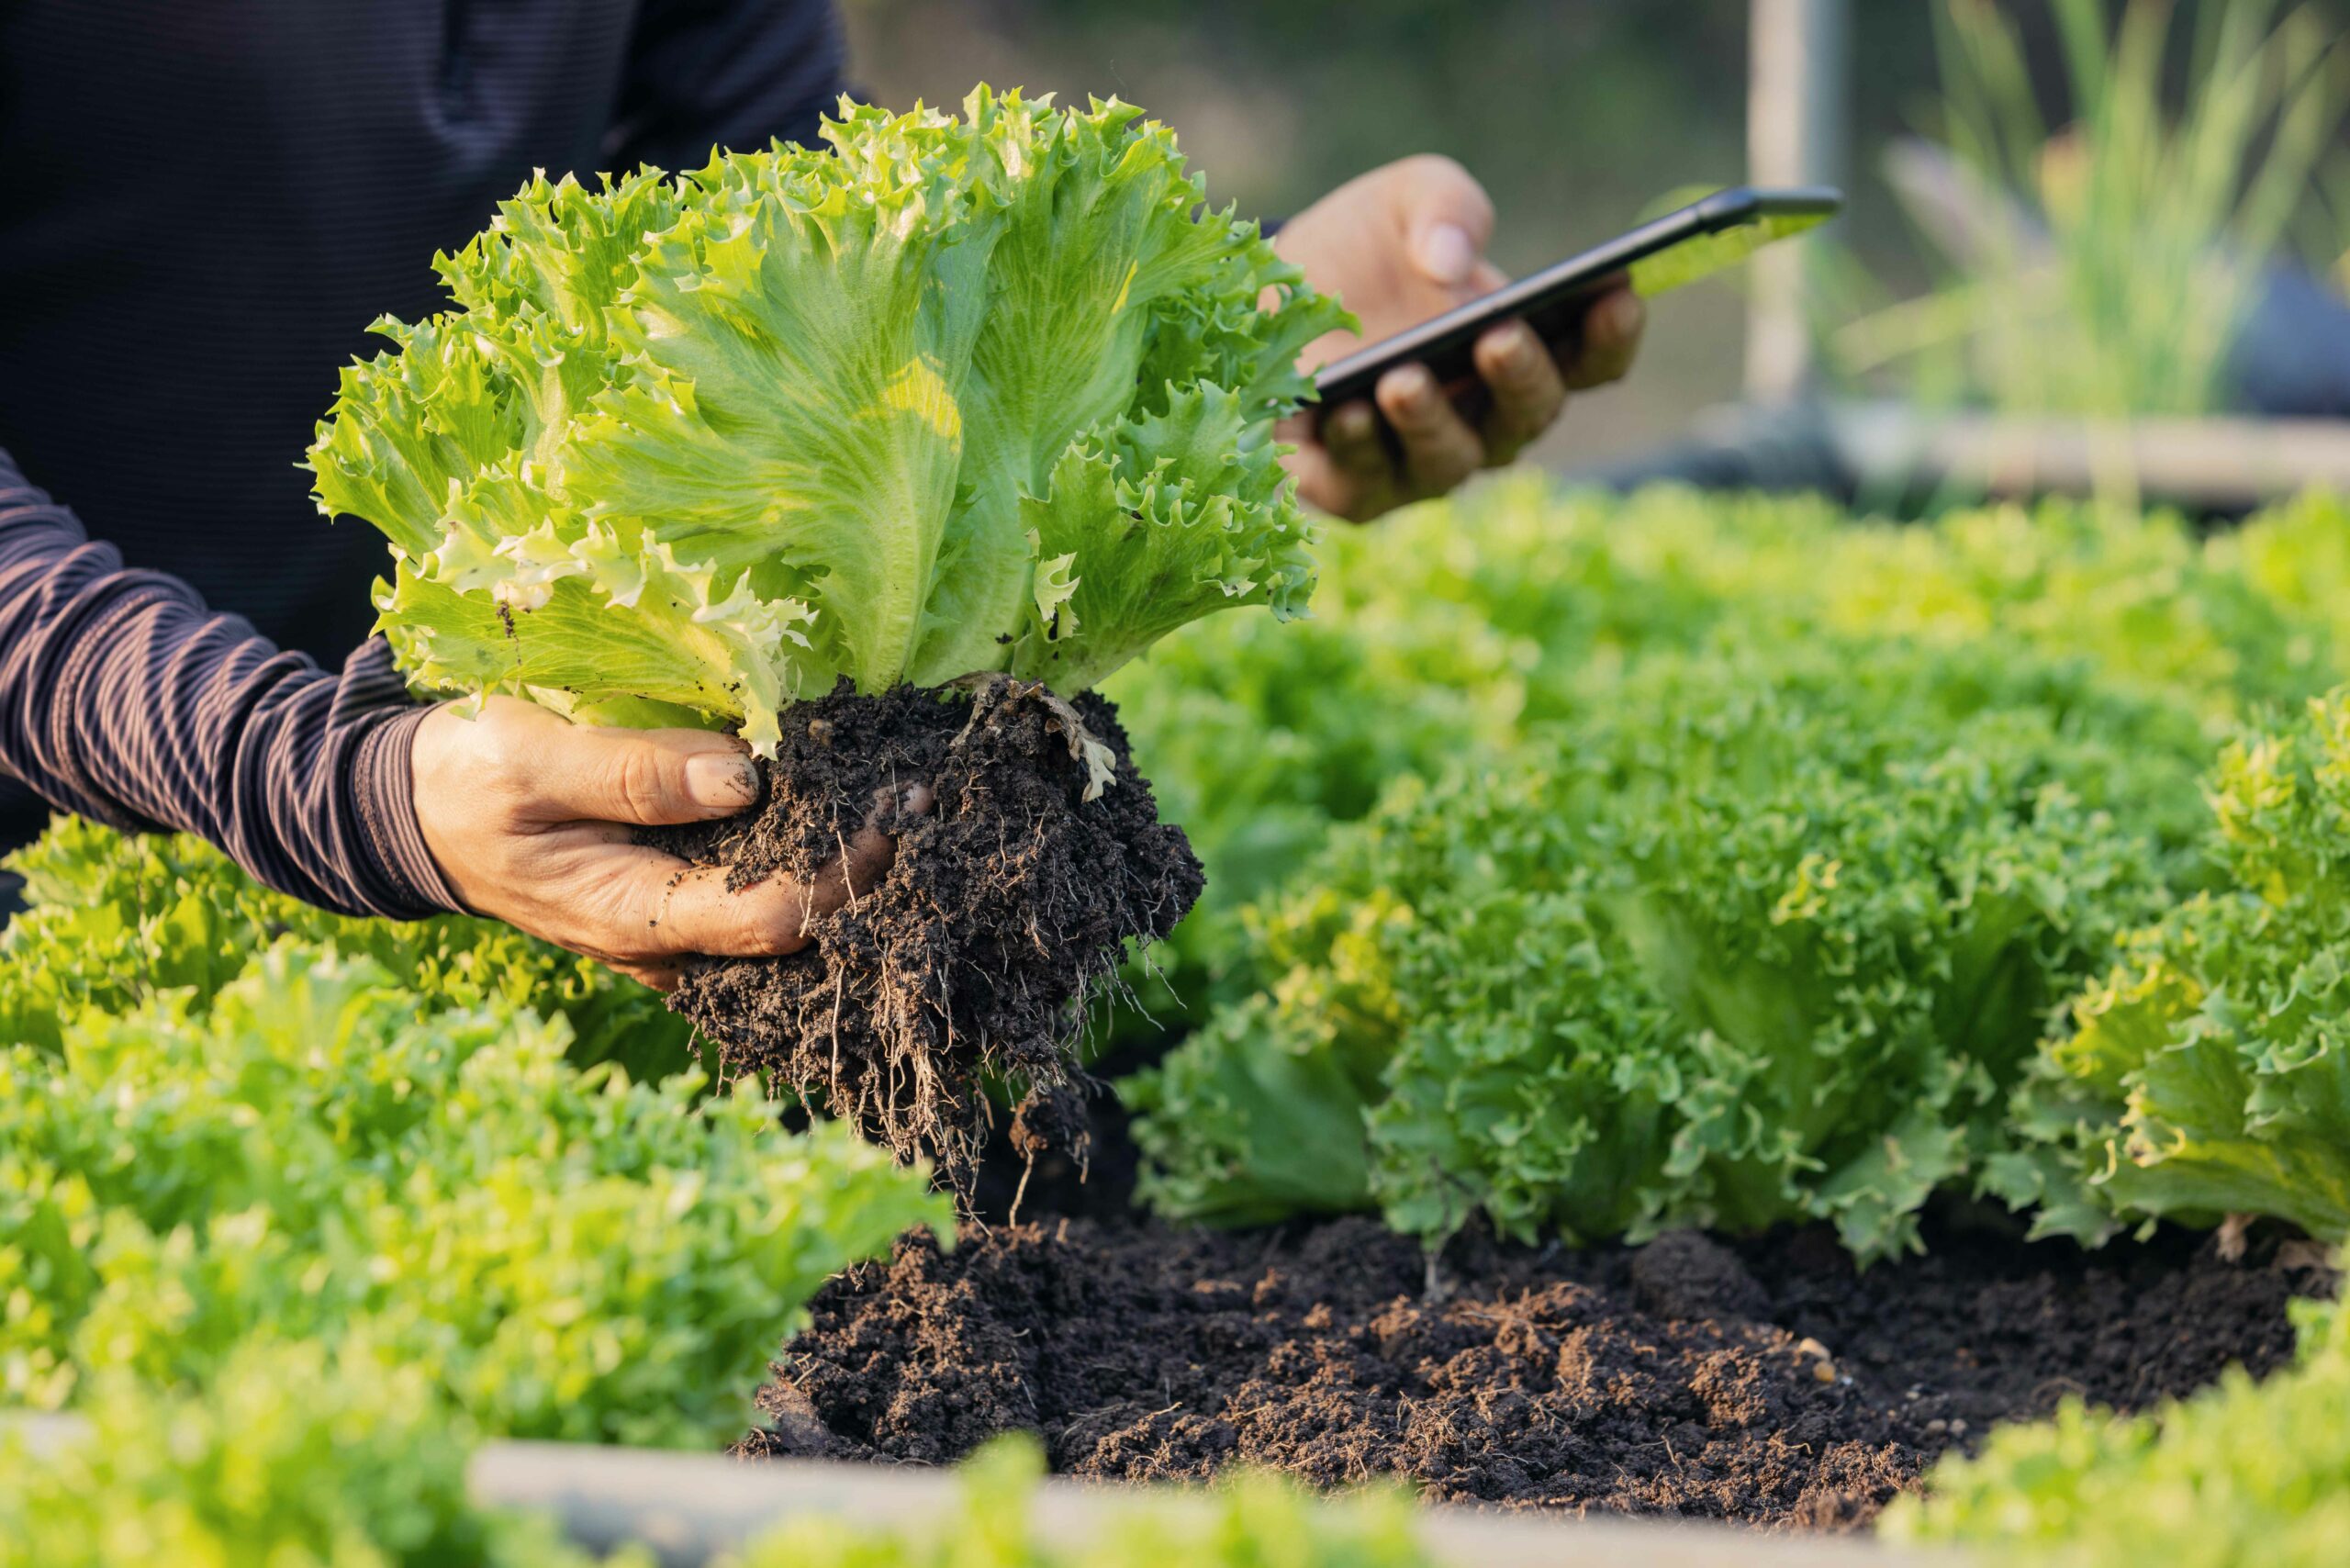 Producción de cultivos más saludables La IA permite a los agricultores producir cultivos más saludables a través de la implementación de tecnologías como el Índice de Vegetación de Diferencia Normalizada (NDVI). El NDVI cuantifica la vegetación midiendo la diferencia entre el infrarrojo cercano y el rojo, lo que permite medir el contenido de clorofila en la vegetación y así determinar su salud. Las áreas con altos niveles de clorofila indican vegetación sana, lo que permite a los agricultores ajustar sus prácticas para mejorar la productividad de los cultivos.